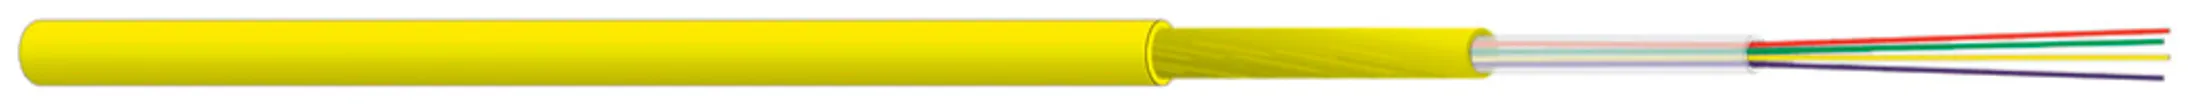 Câble FO Indoor FTTH 1×4 G.657 A Coat Dca jaune 